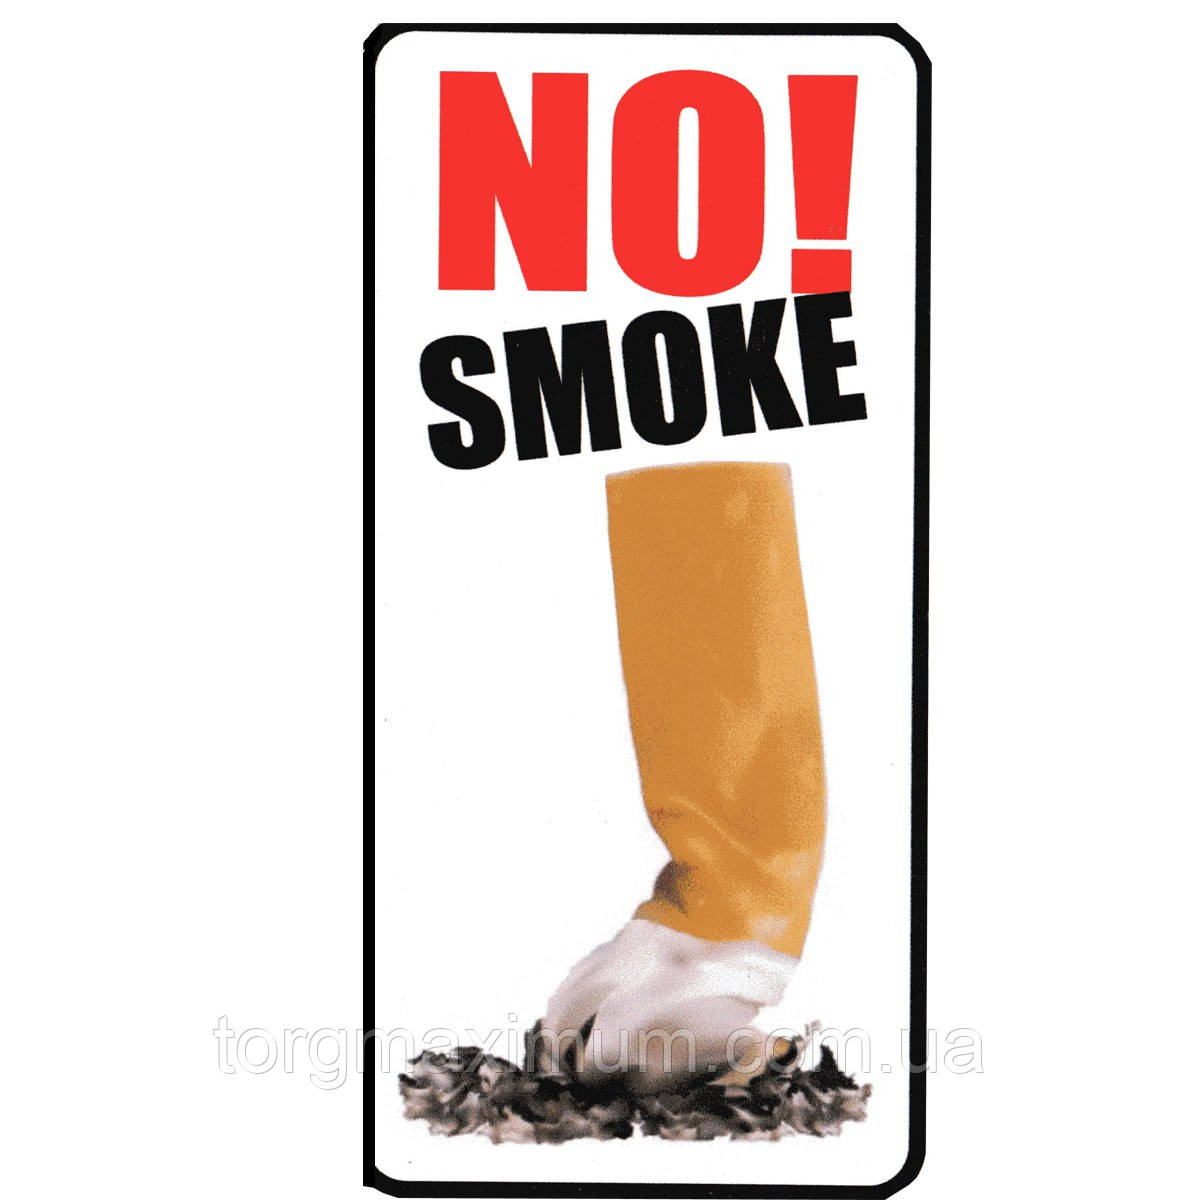 Наклейка "No smoke!" (Не курити!)